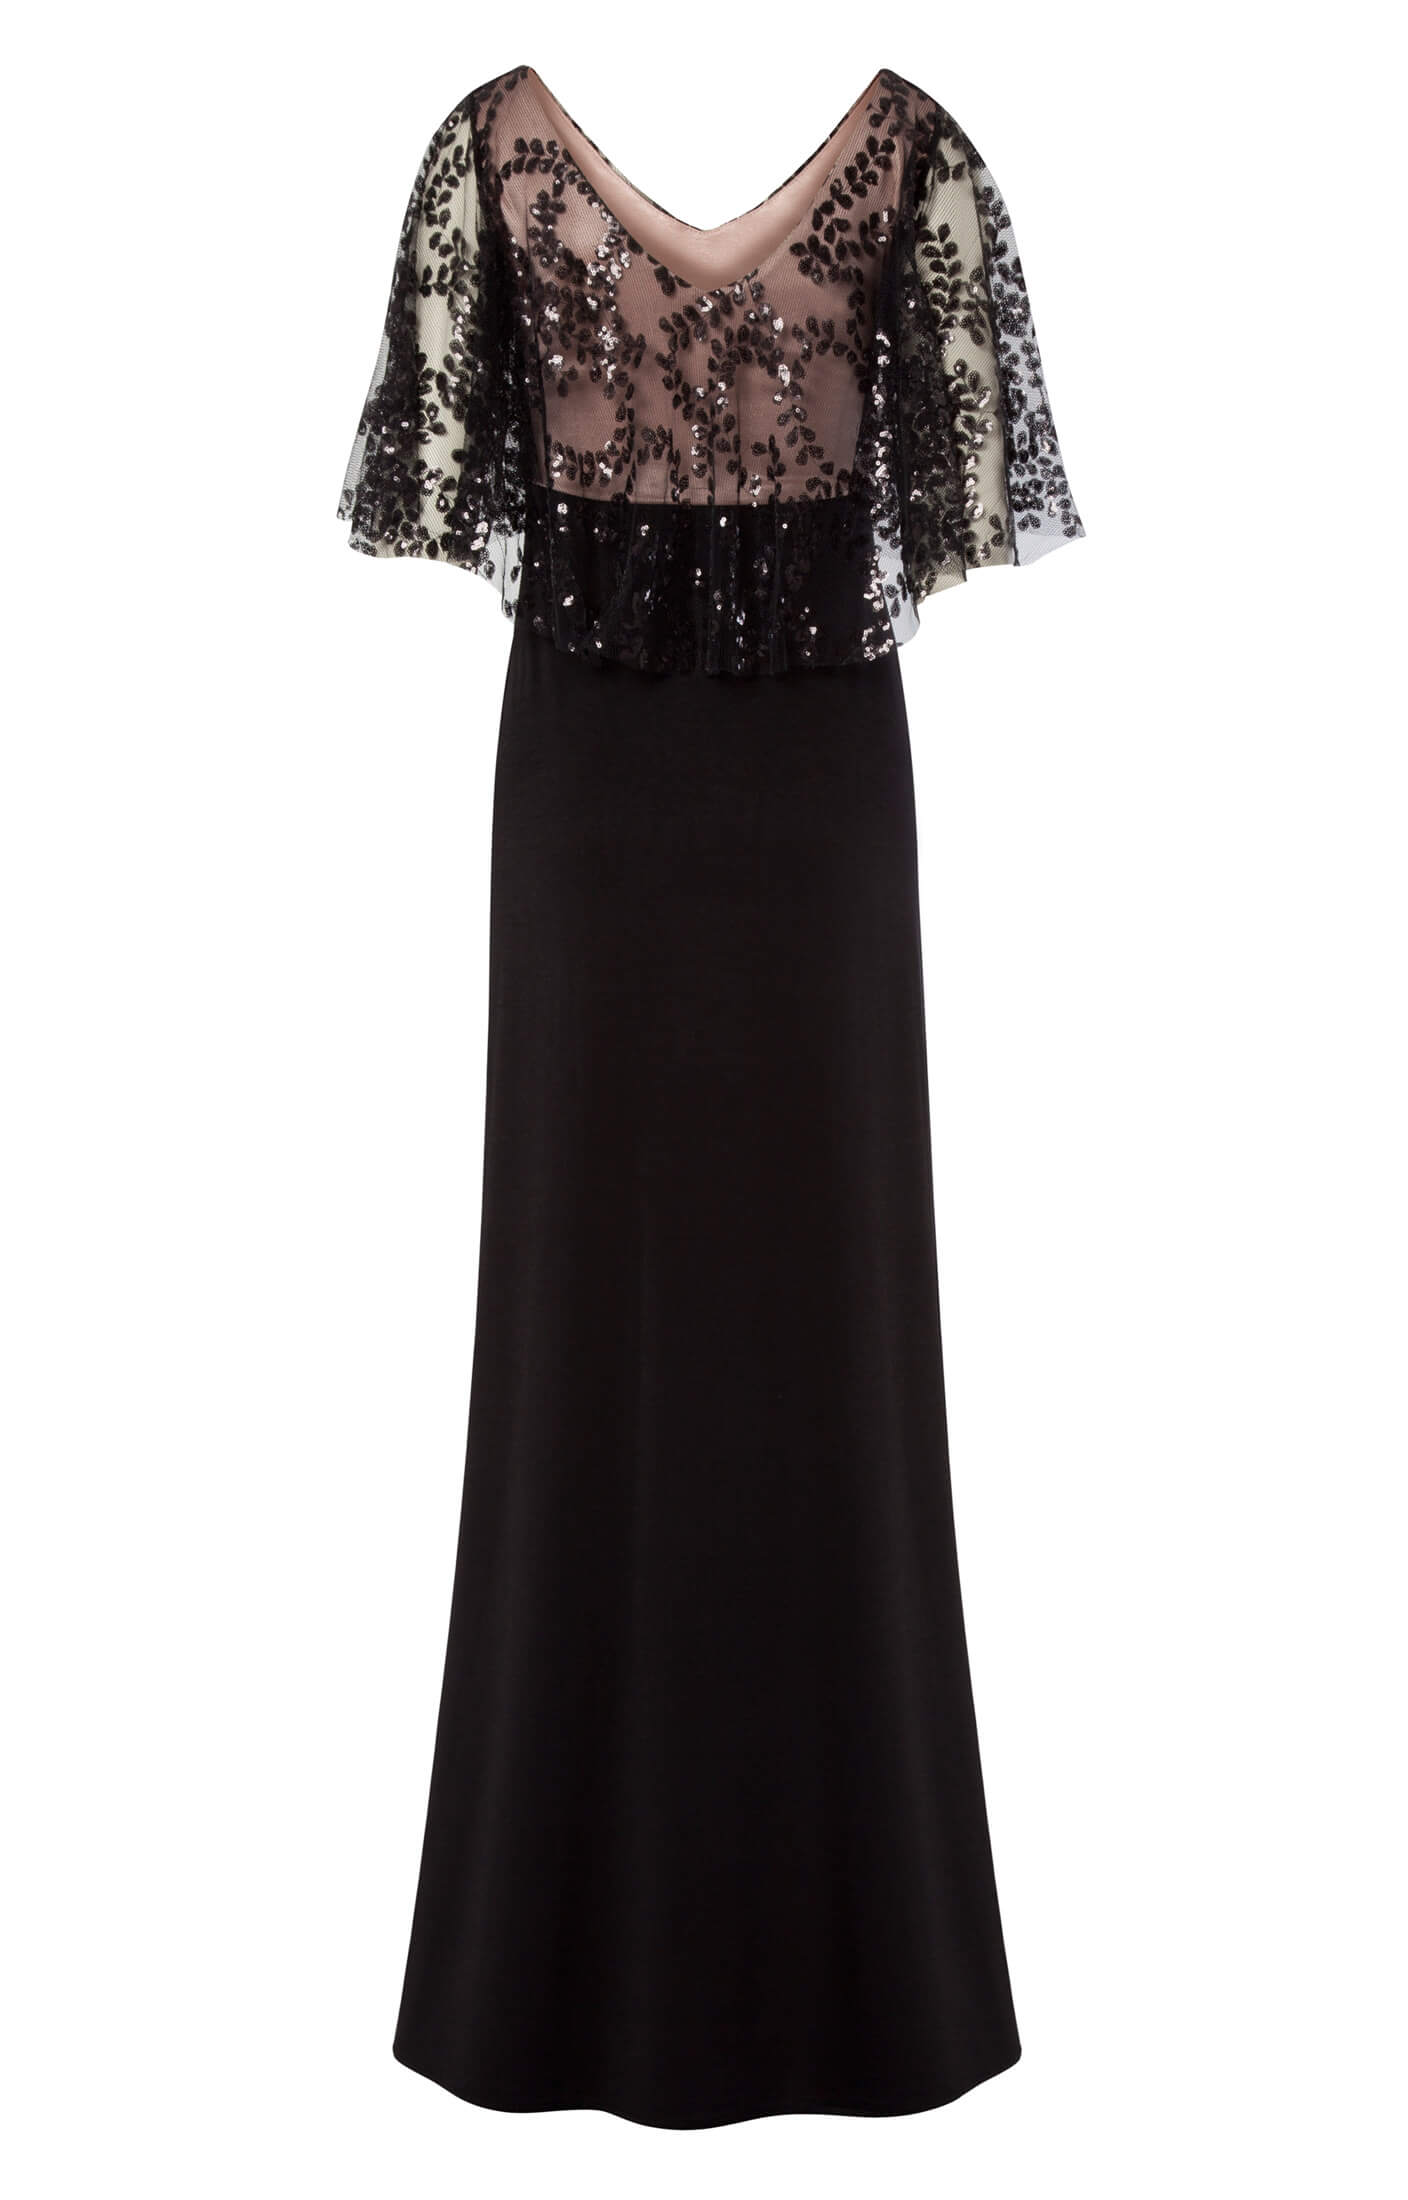 Kleid Vintage Cape Blush Noir Umstandshochzeitskleider Abendgarderobe Und Partykleidung By Tiffany Rose De